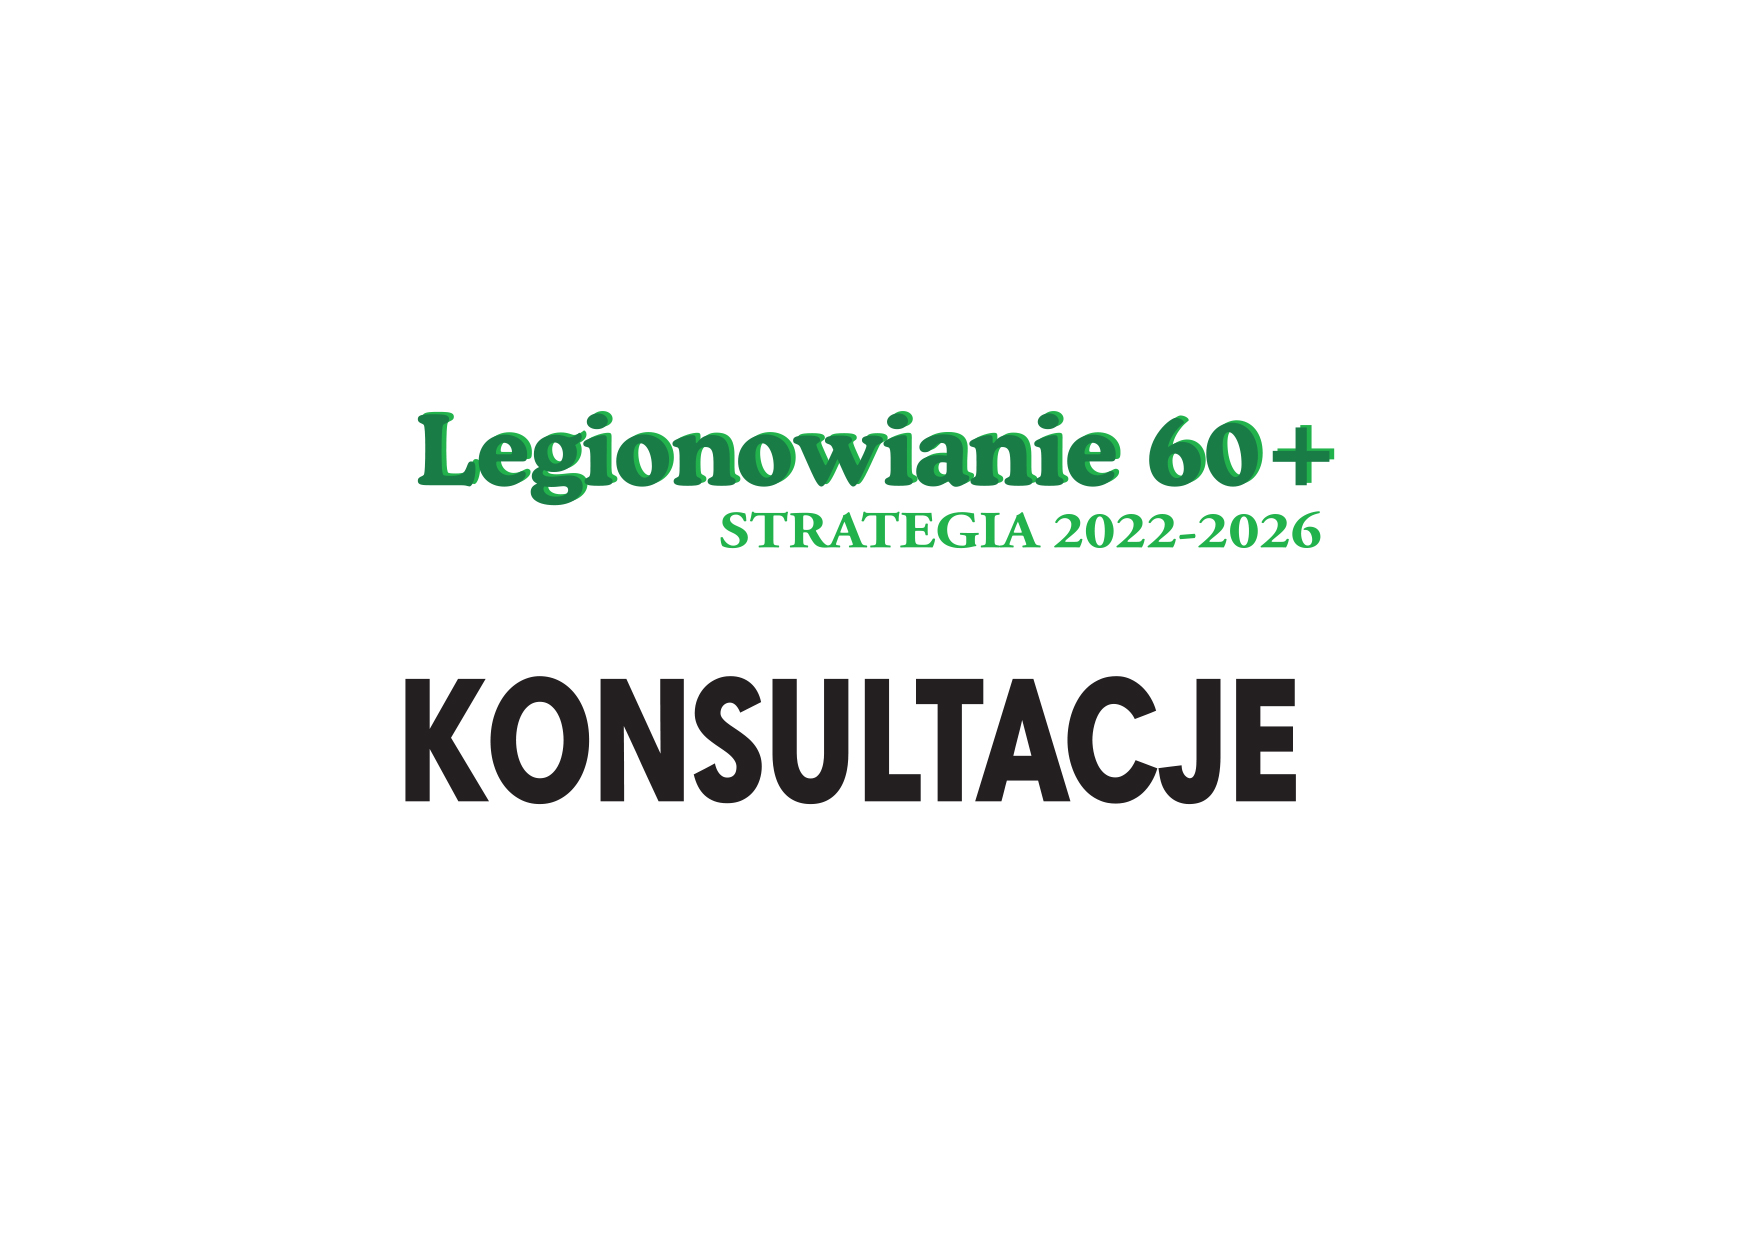 Konsultacje Strategii działań miasta Legionowo na rzecz seniorów 60+ na lata 2022-2026